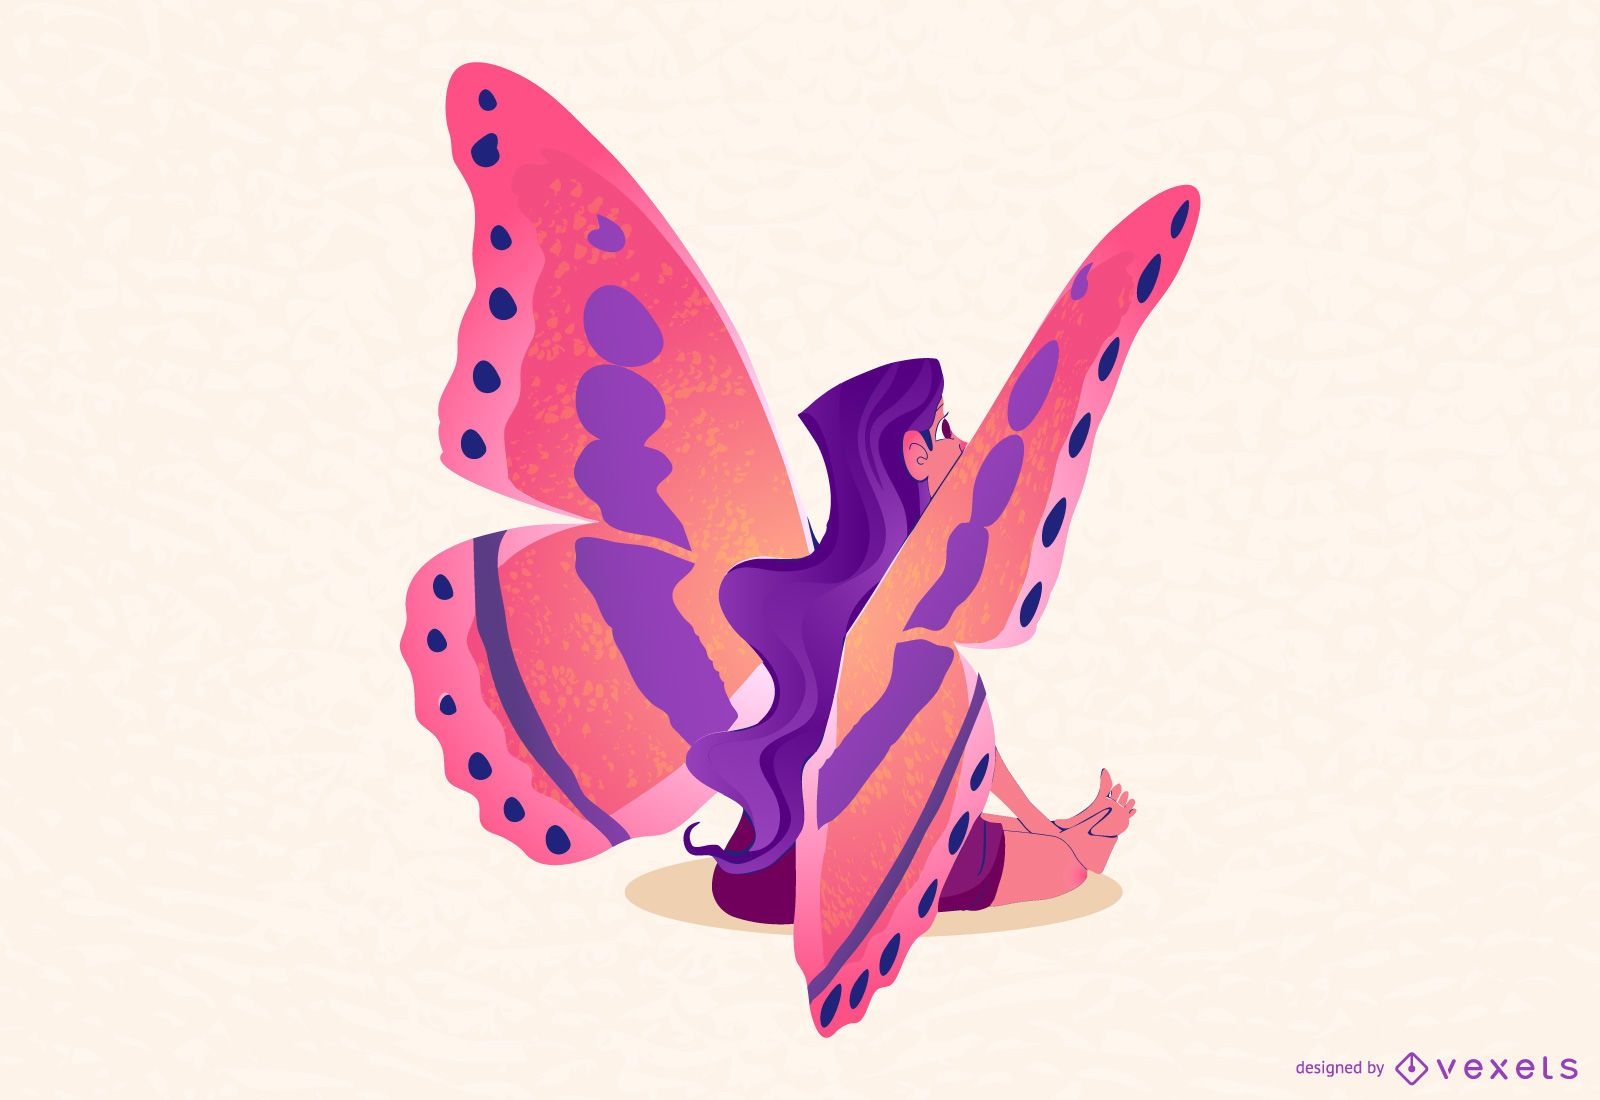 Butterfly fairy illustration